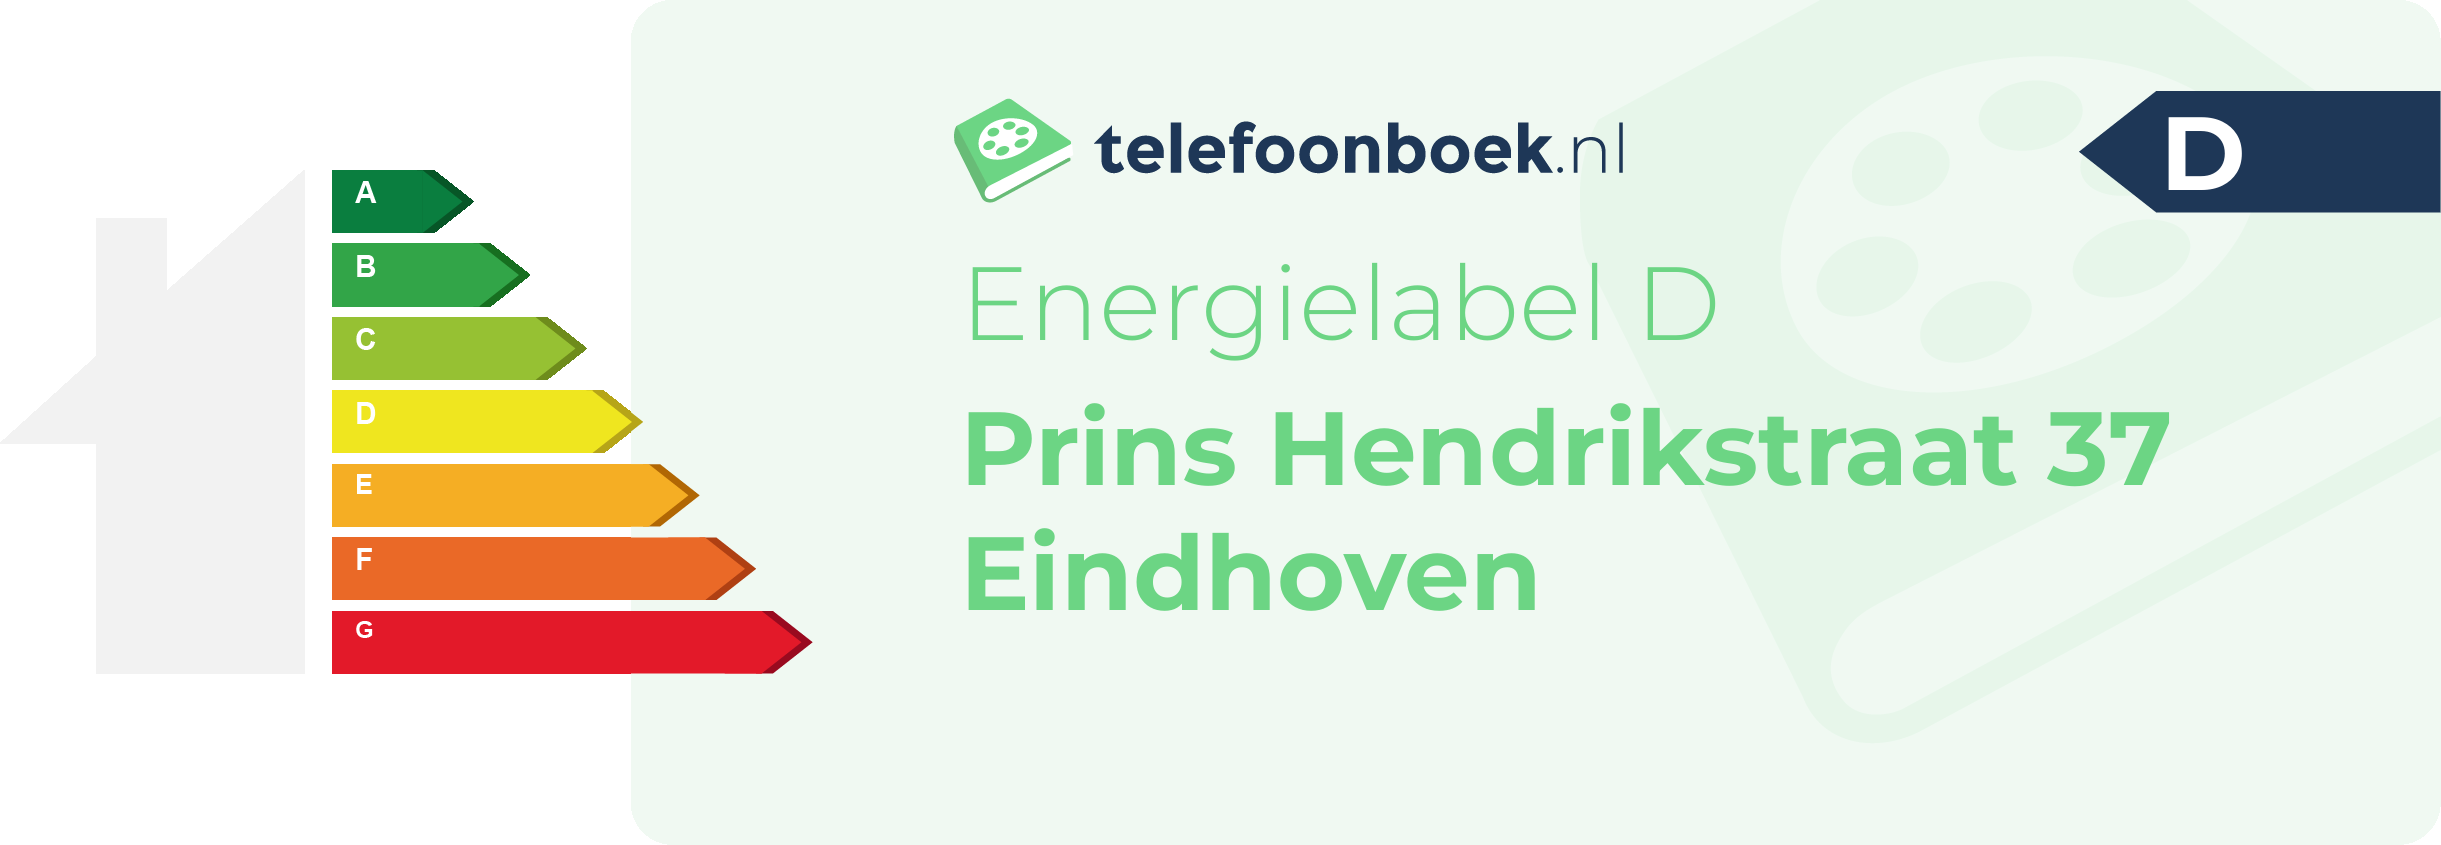 Energielabel Prins Hendrikstraat 37 Eindhoven